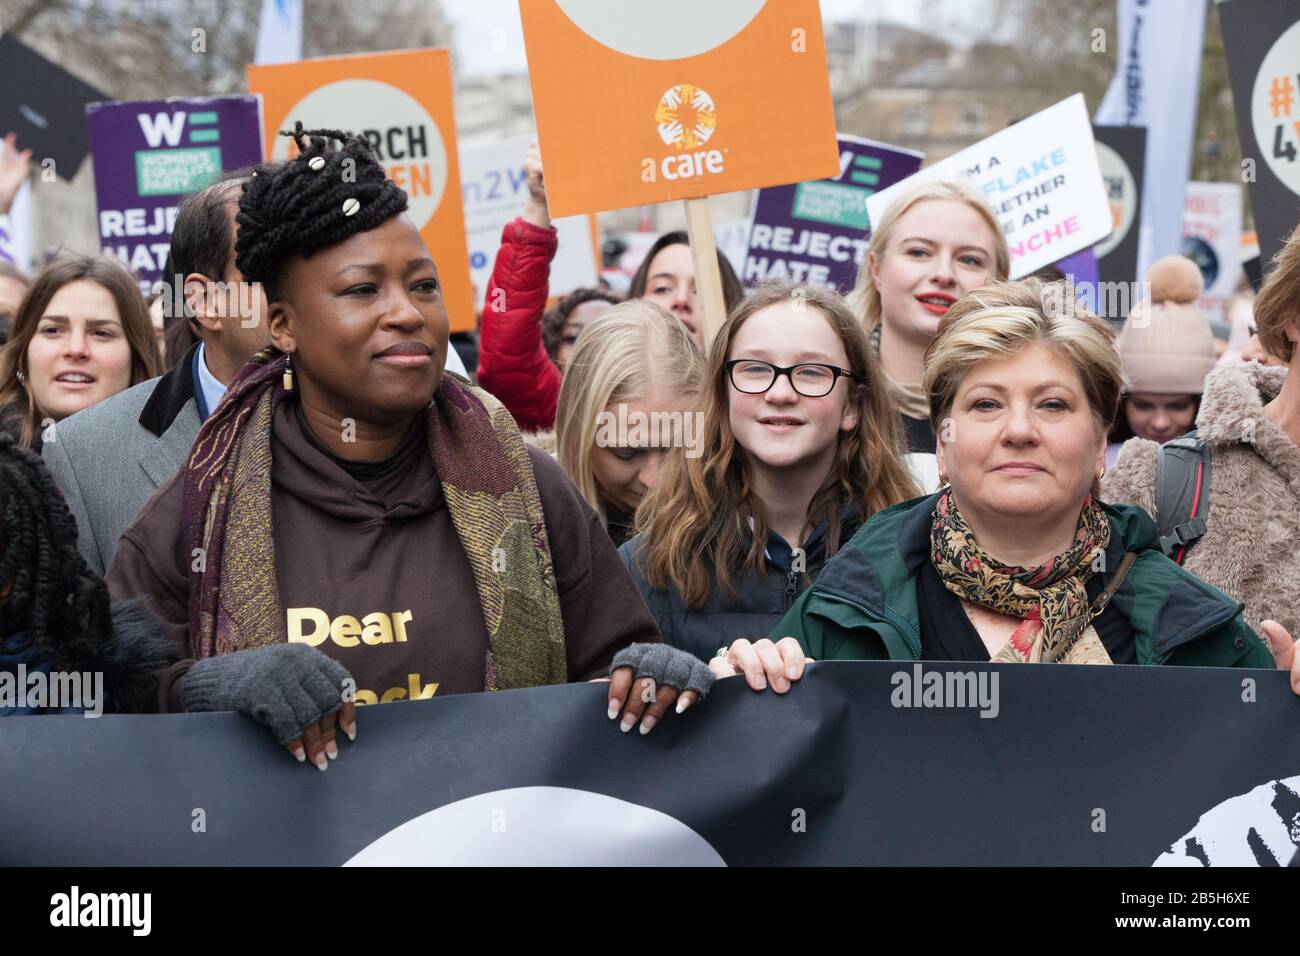 Londres, Reino Unido. 8 Mar 2020. Celebridades, activistas y políticos se unieron al March4Women, organizado por Care y el Partido de la igualdad de las mujeres, para conmemorar el día Internacional de la Mujer. Anna Watson/Alamy Live News Foto de stock